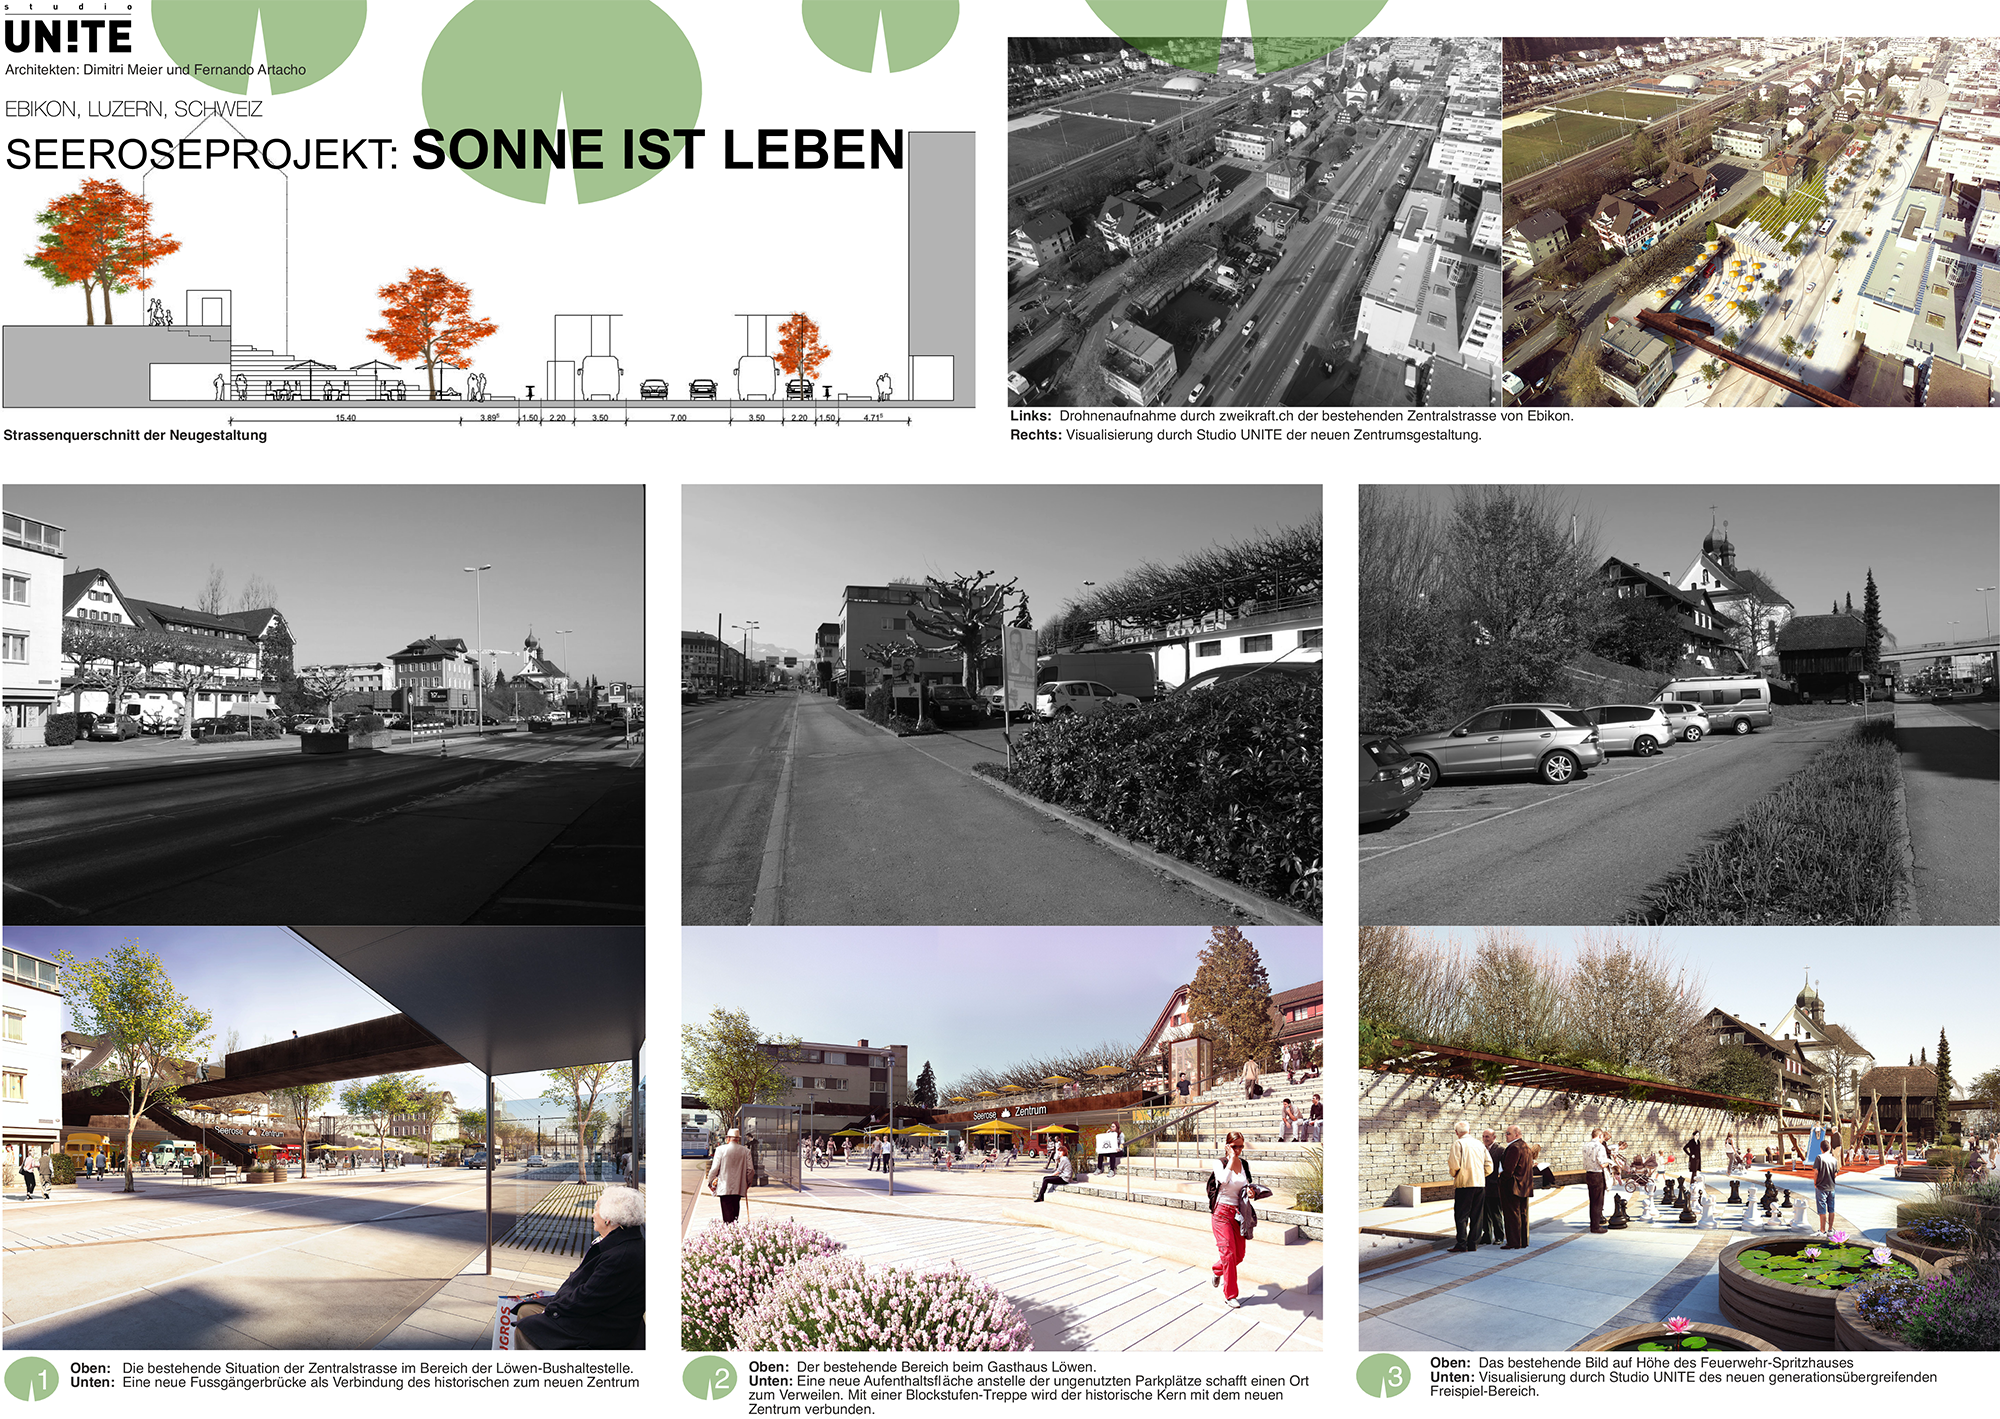 Seeroseprojekt bebilderte Gegenüberstellungen der städtebaulichen Veränderungen_Vorher und Nachher